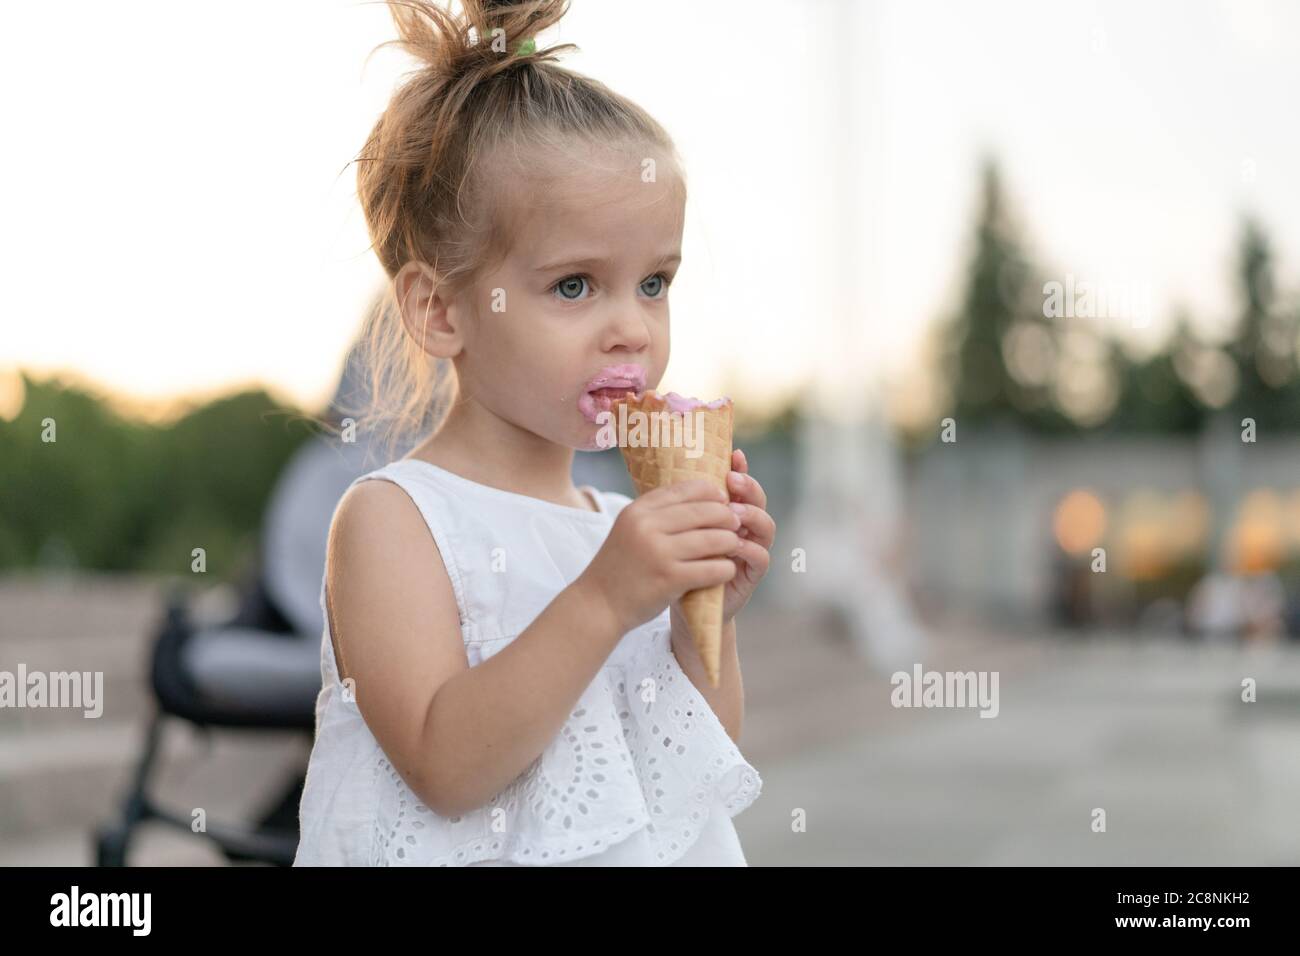 Kleine kaukasische Mädchen 3 Jahre alt isst Eis Nahaufnahme Porträt. Sommerzeit. Kind mit gefrorenem Dessert in der Hand zu Fuß im Freien. Nahaufnahme Porträt europäische Mädchen mit Eis. Stockfoto